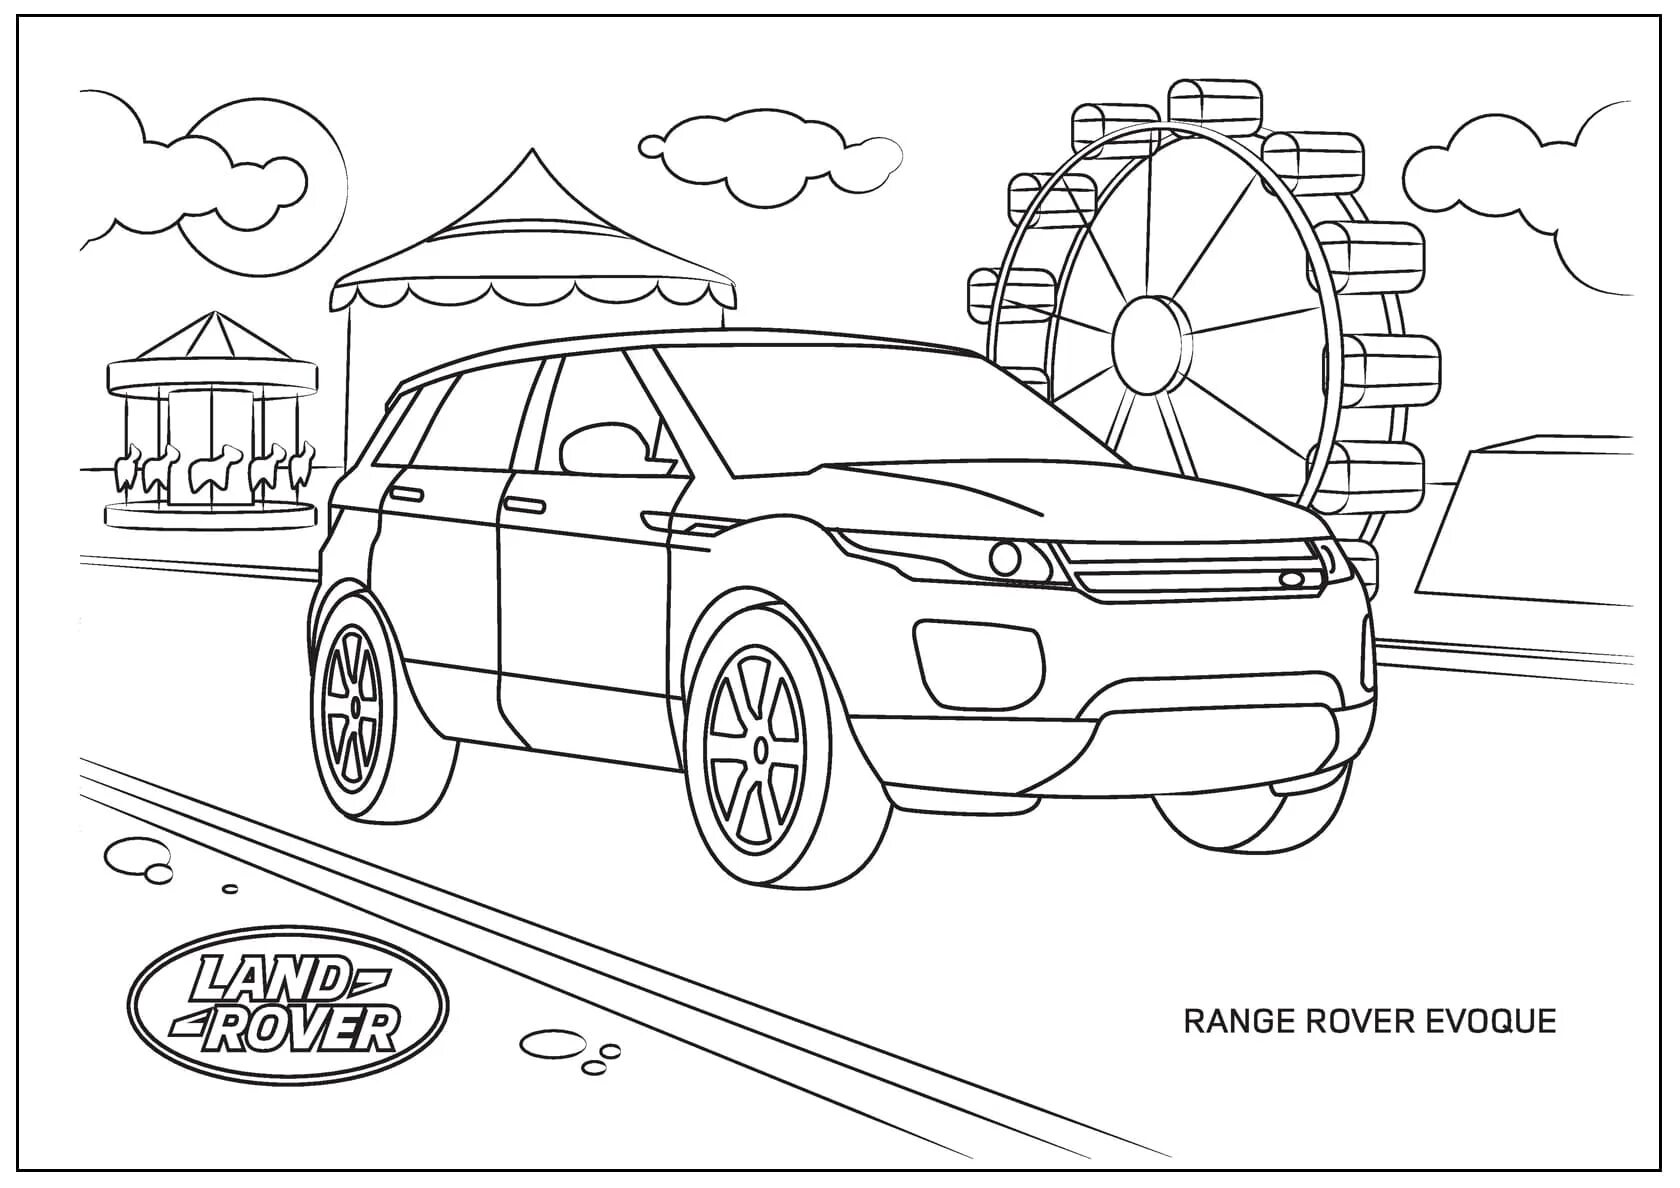 Range rover #14